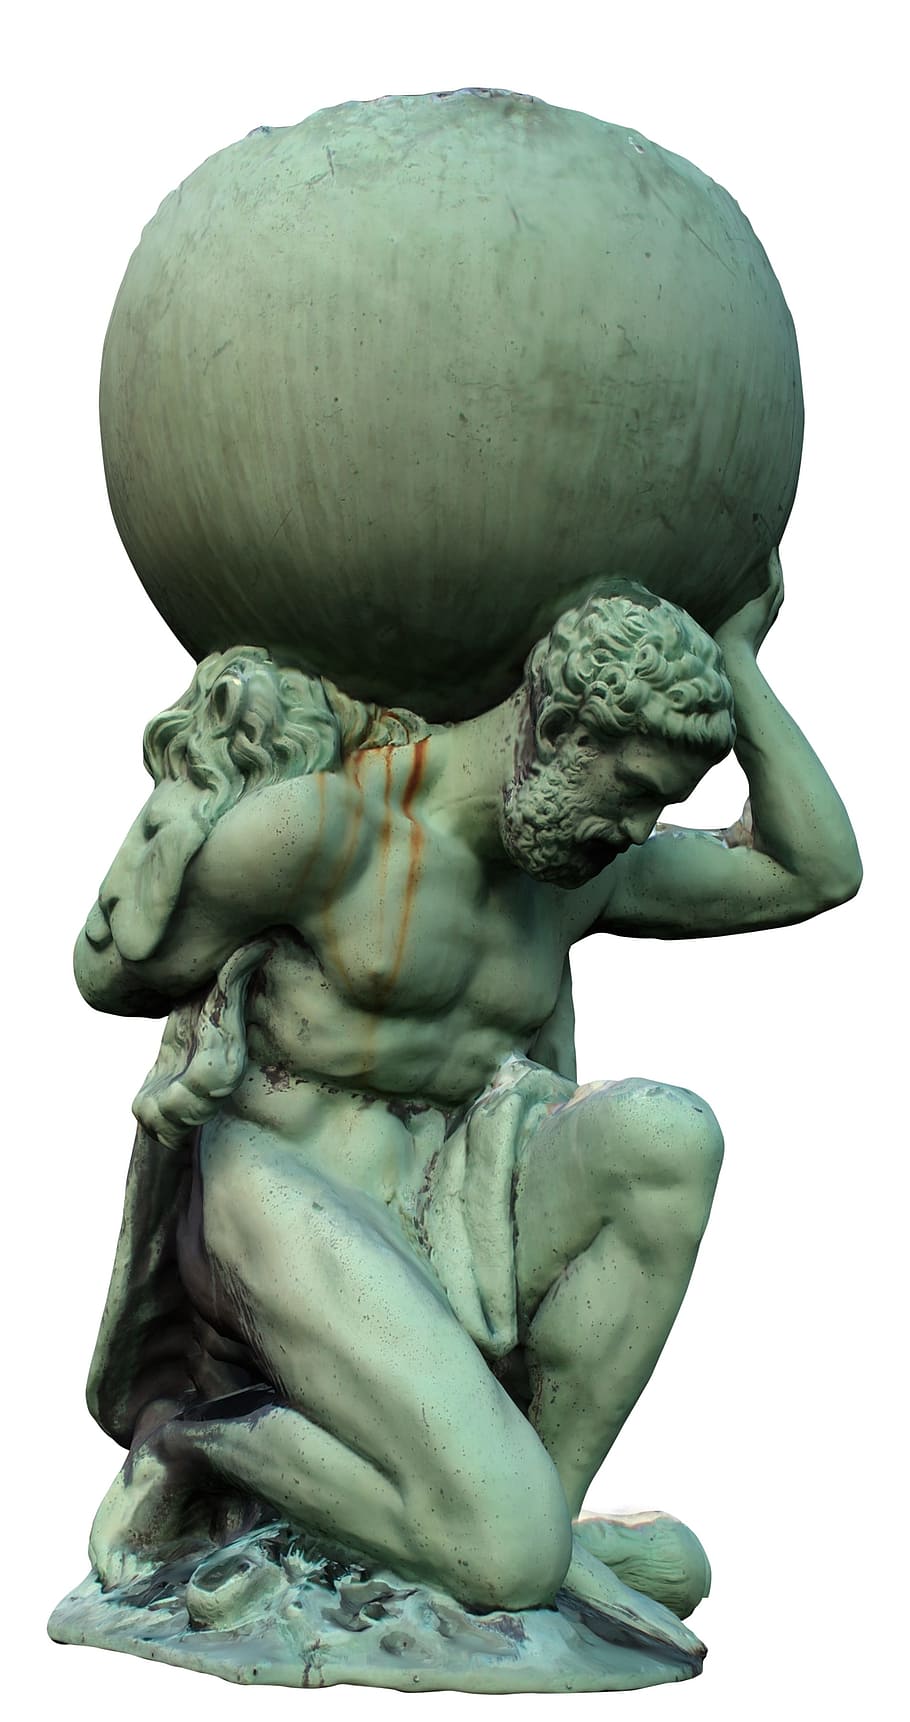 atlas concrete statue, atlas, sculpture, myth, historic, monument, man, statue, mythology, classic